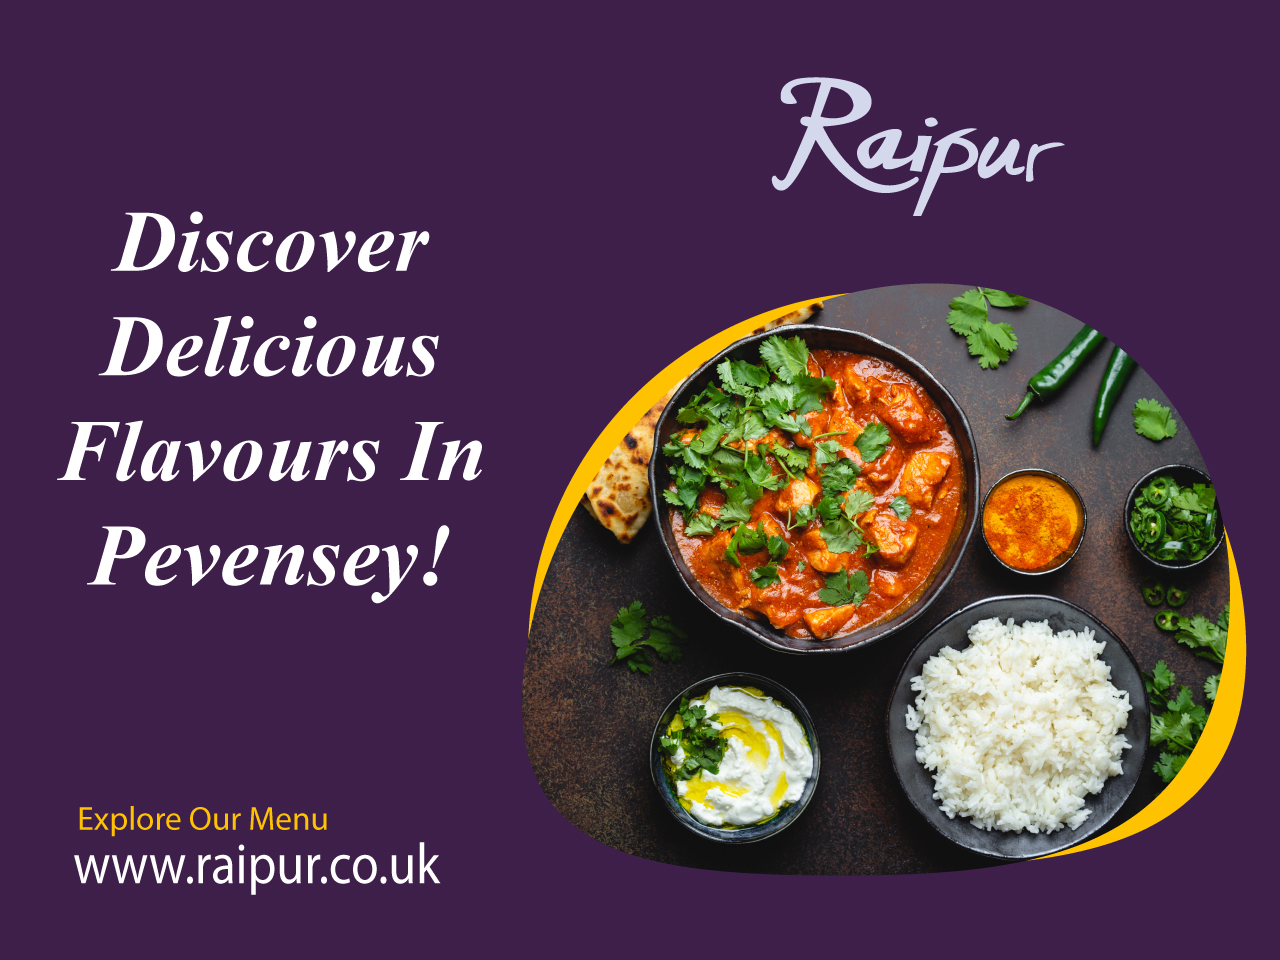 Raipur Contemporary Indian Cuisine